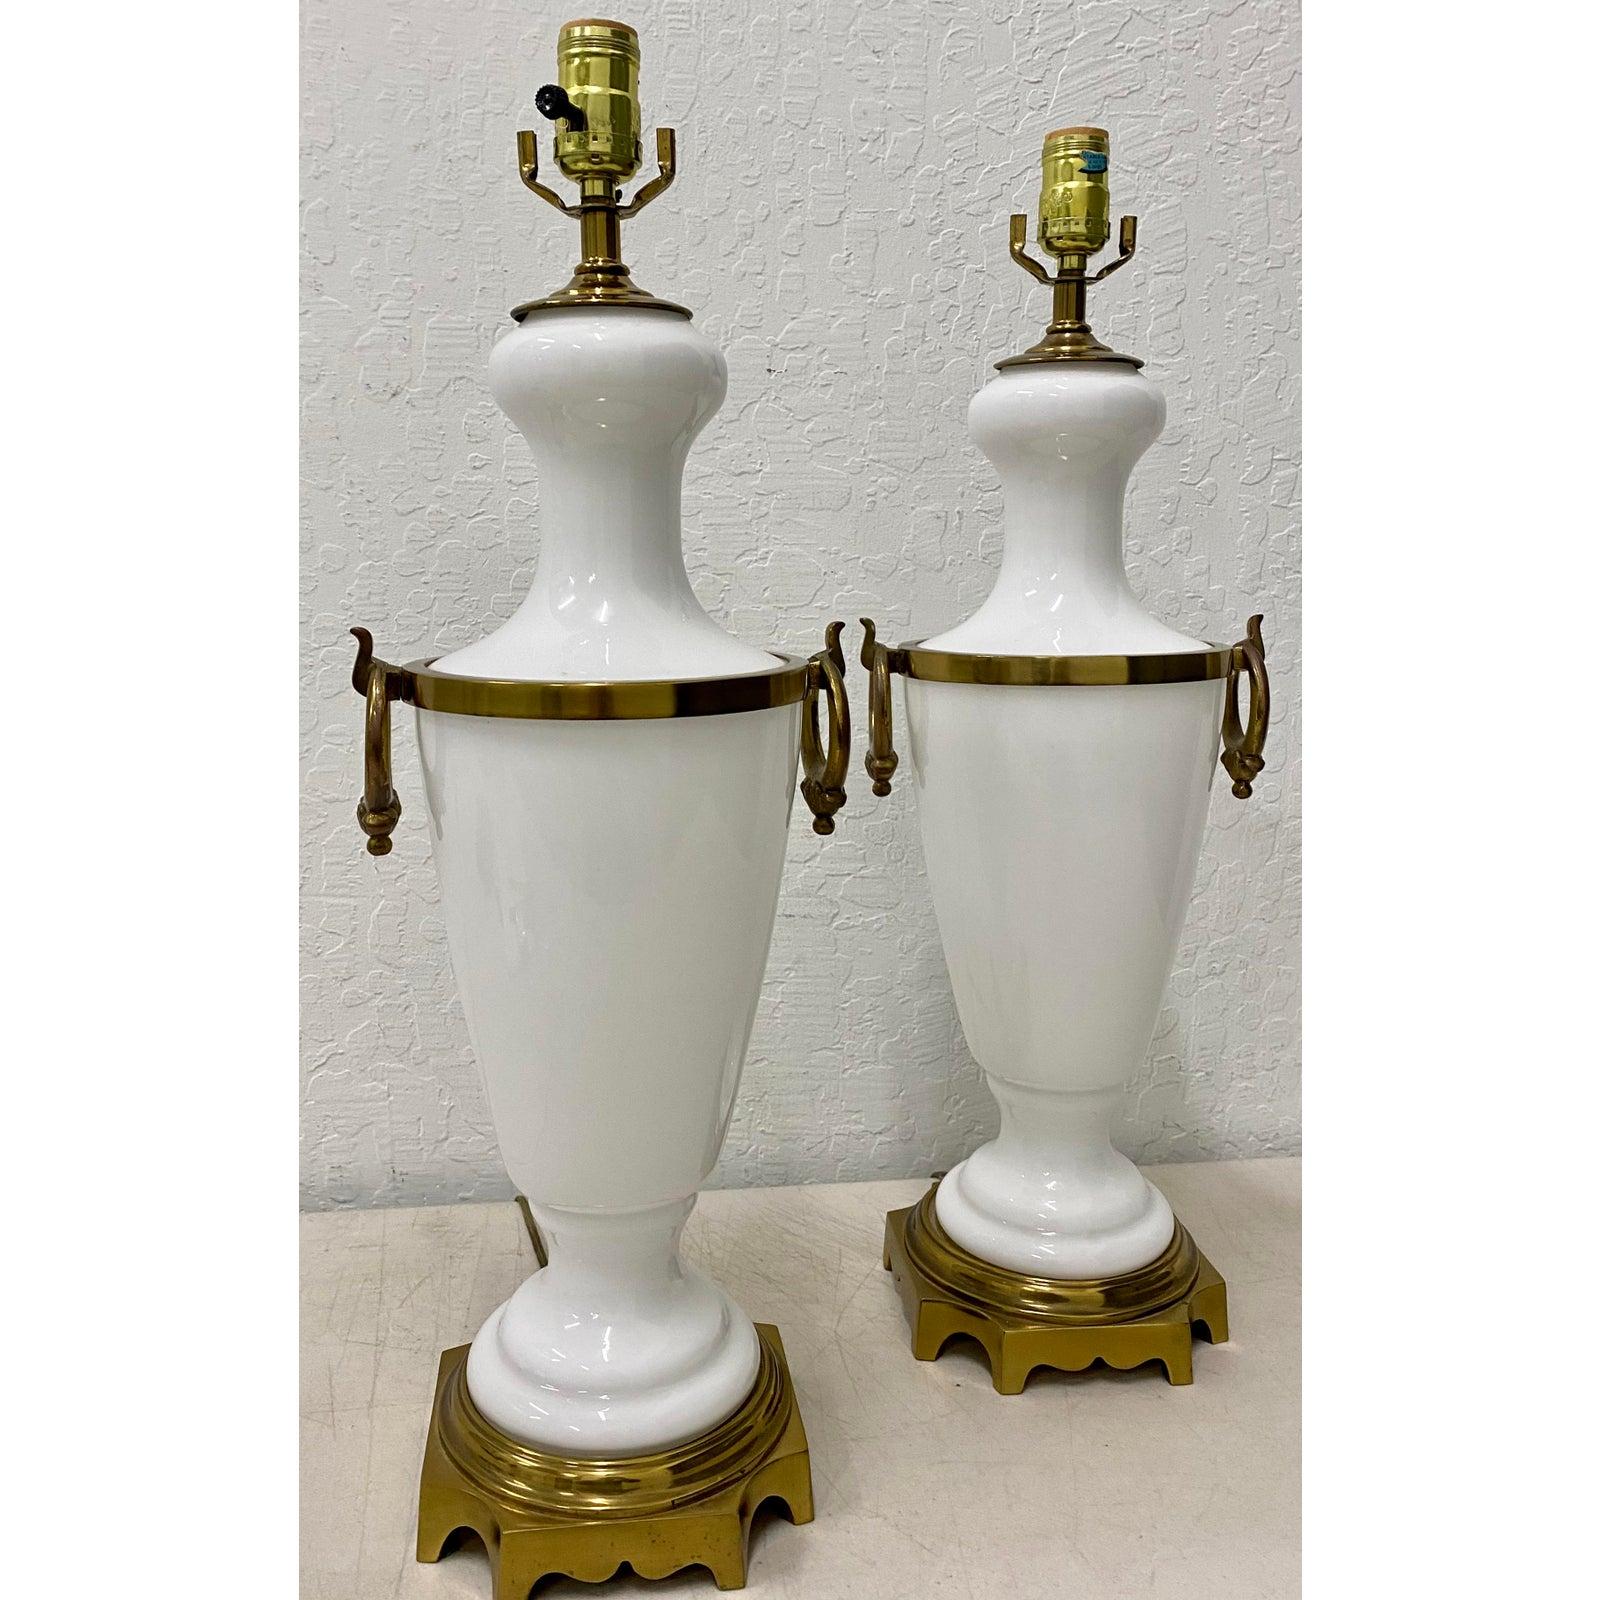 Paar Hollywood-Regency-Tischlampen aus weißem Glas mit Messingbeschlägen, um 1950

Wunderschönes Paar Vintage-Tischlampen.

7